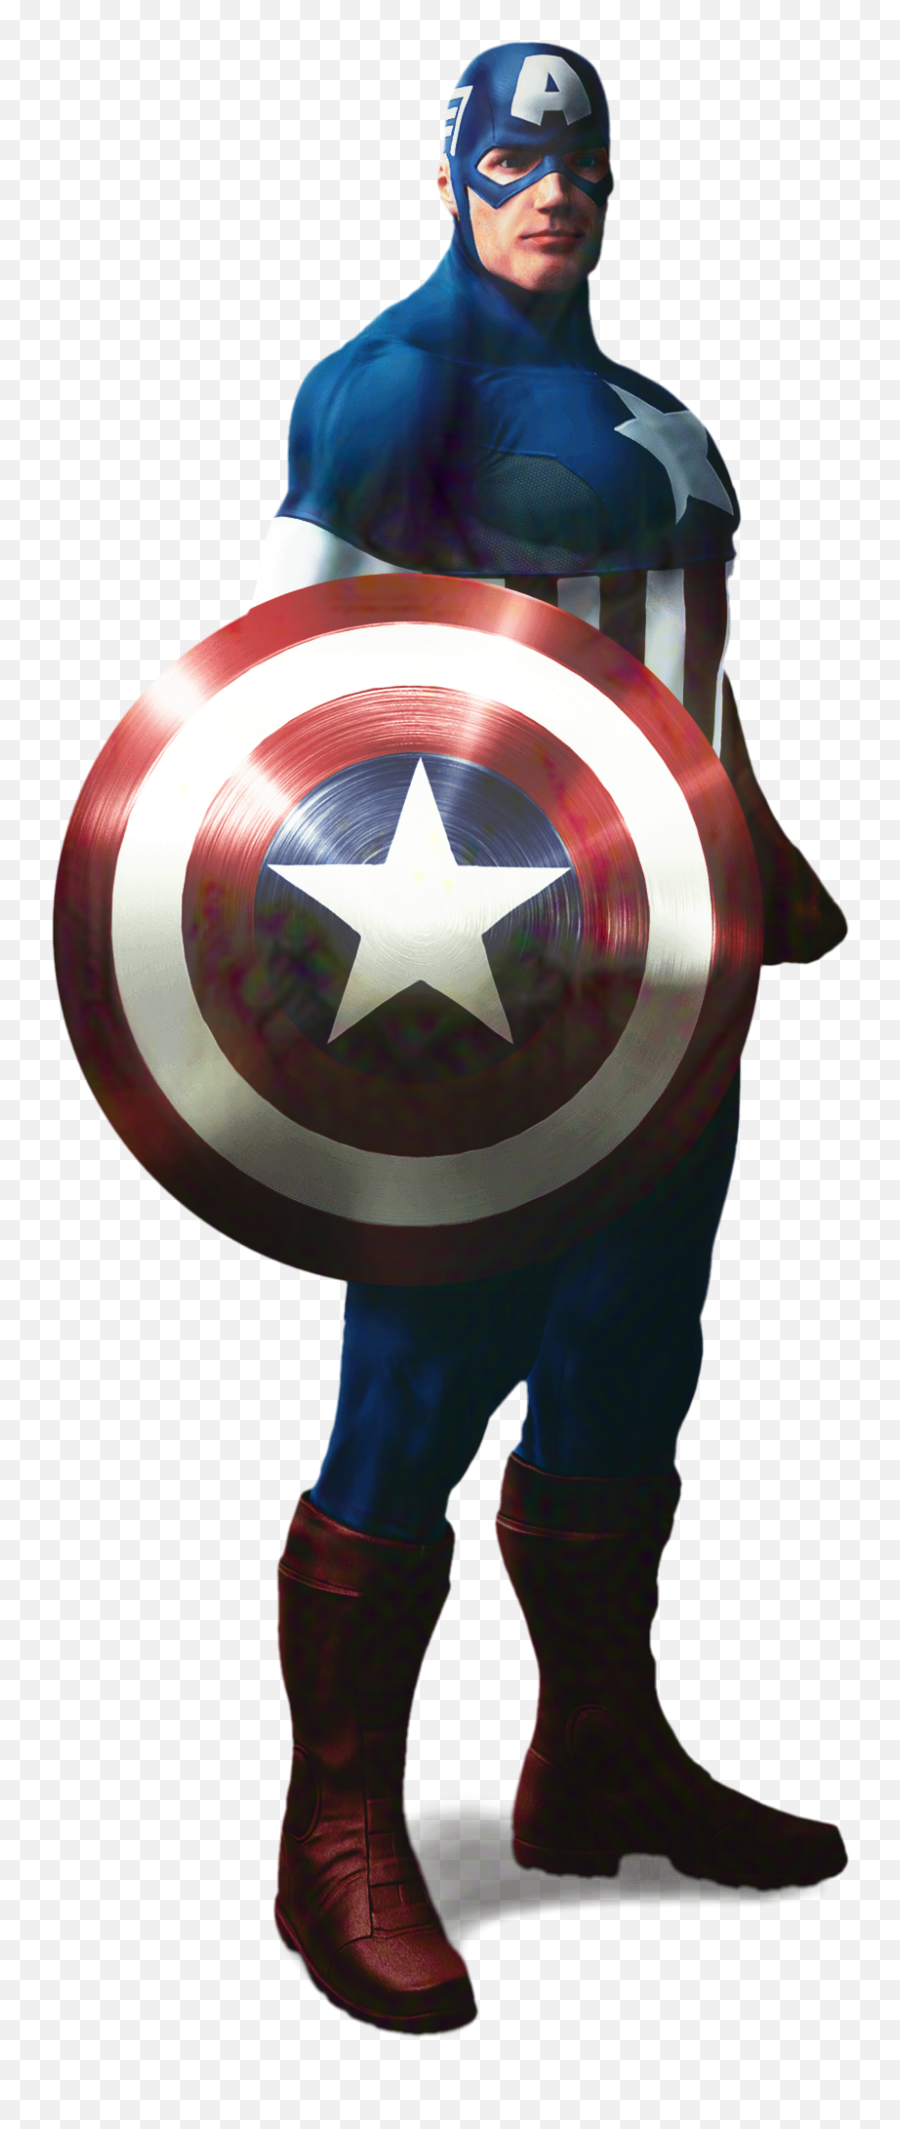 Transparent Captain America Clipart - Captain America Png Transparent Avengers Emoji,Captain America Emoji